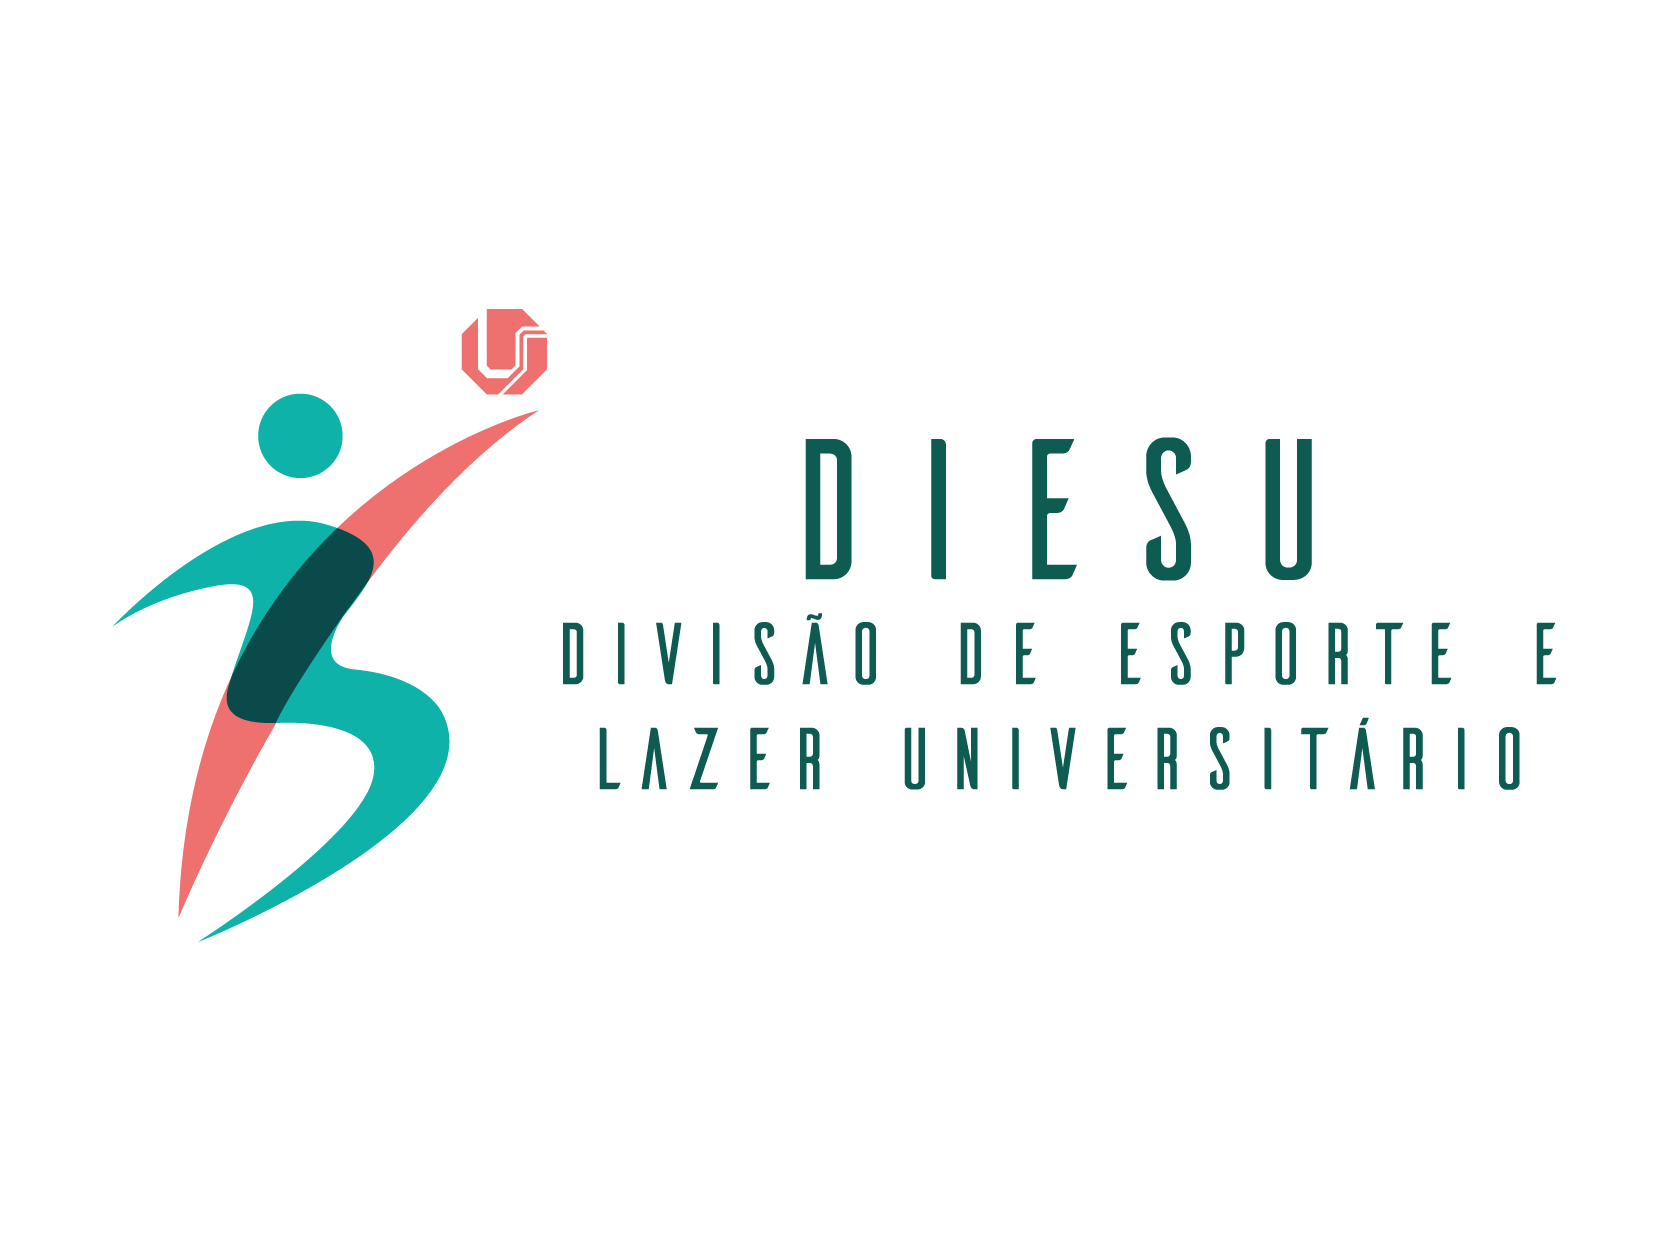 Logotipo da Divisão de Esporte e Lazer Universtitário - DIESU/UFU